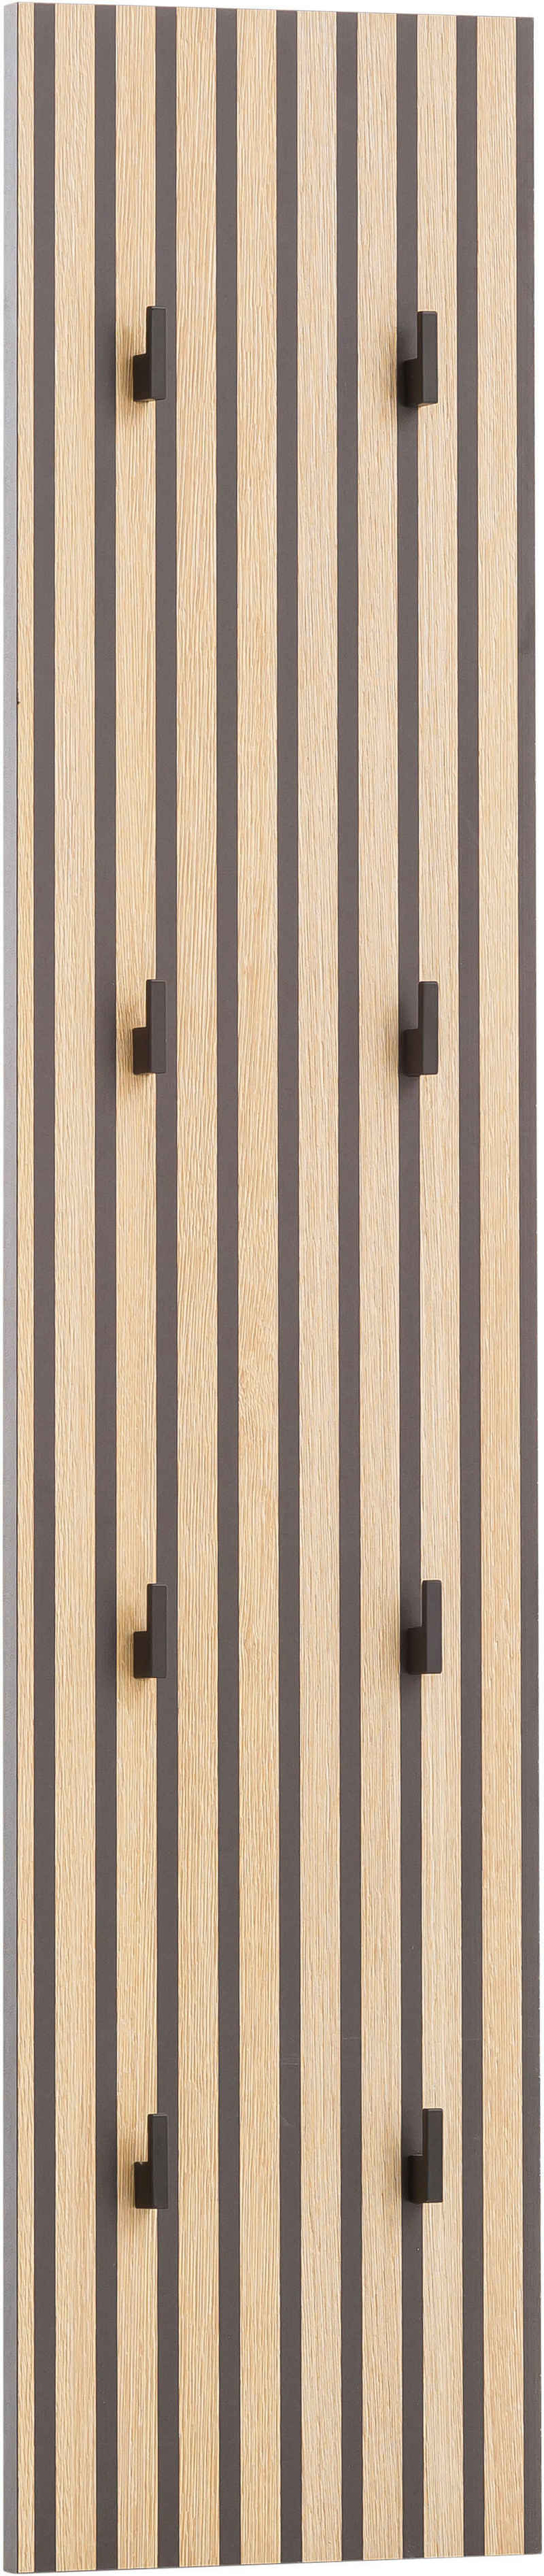 Schildmeyer Garderobenpaneel Alexa, Breite 24 cm, Mit Akustikprint, 8 Kleiderhaken